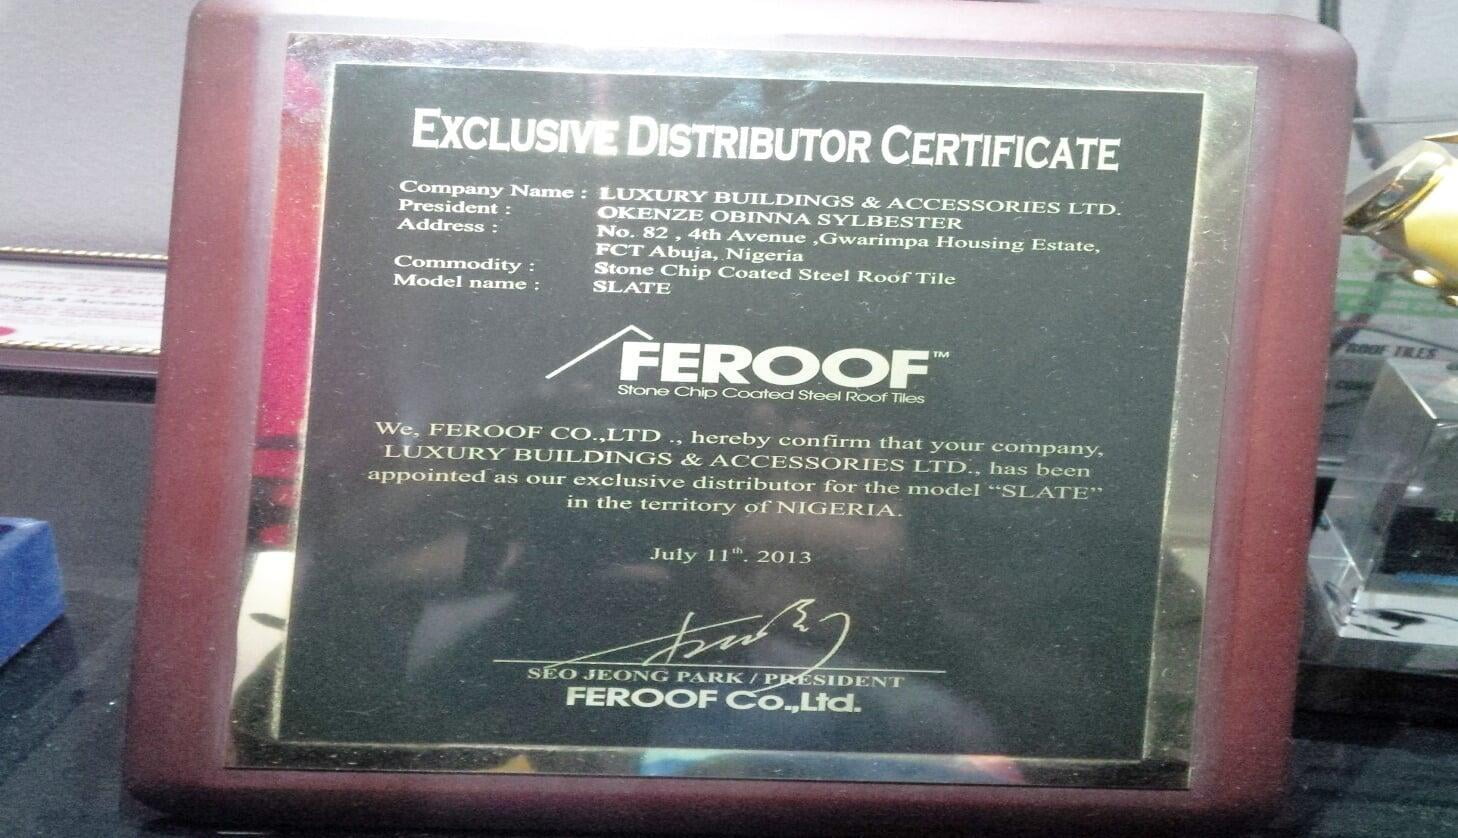 Exclusive Distributor Certificate 2013 (Feroof Building construction Korea)